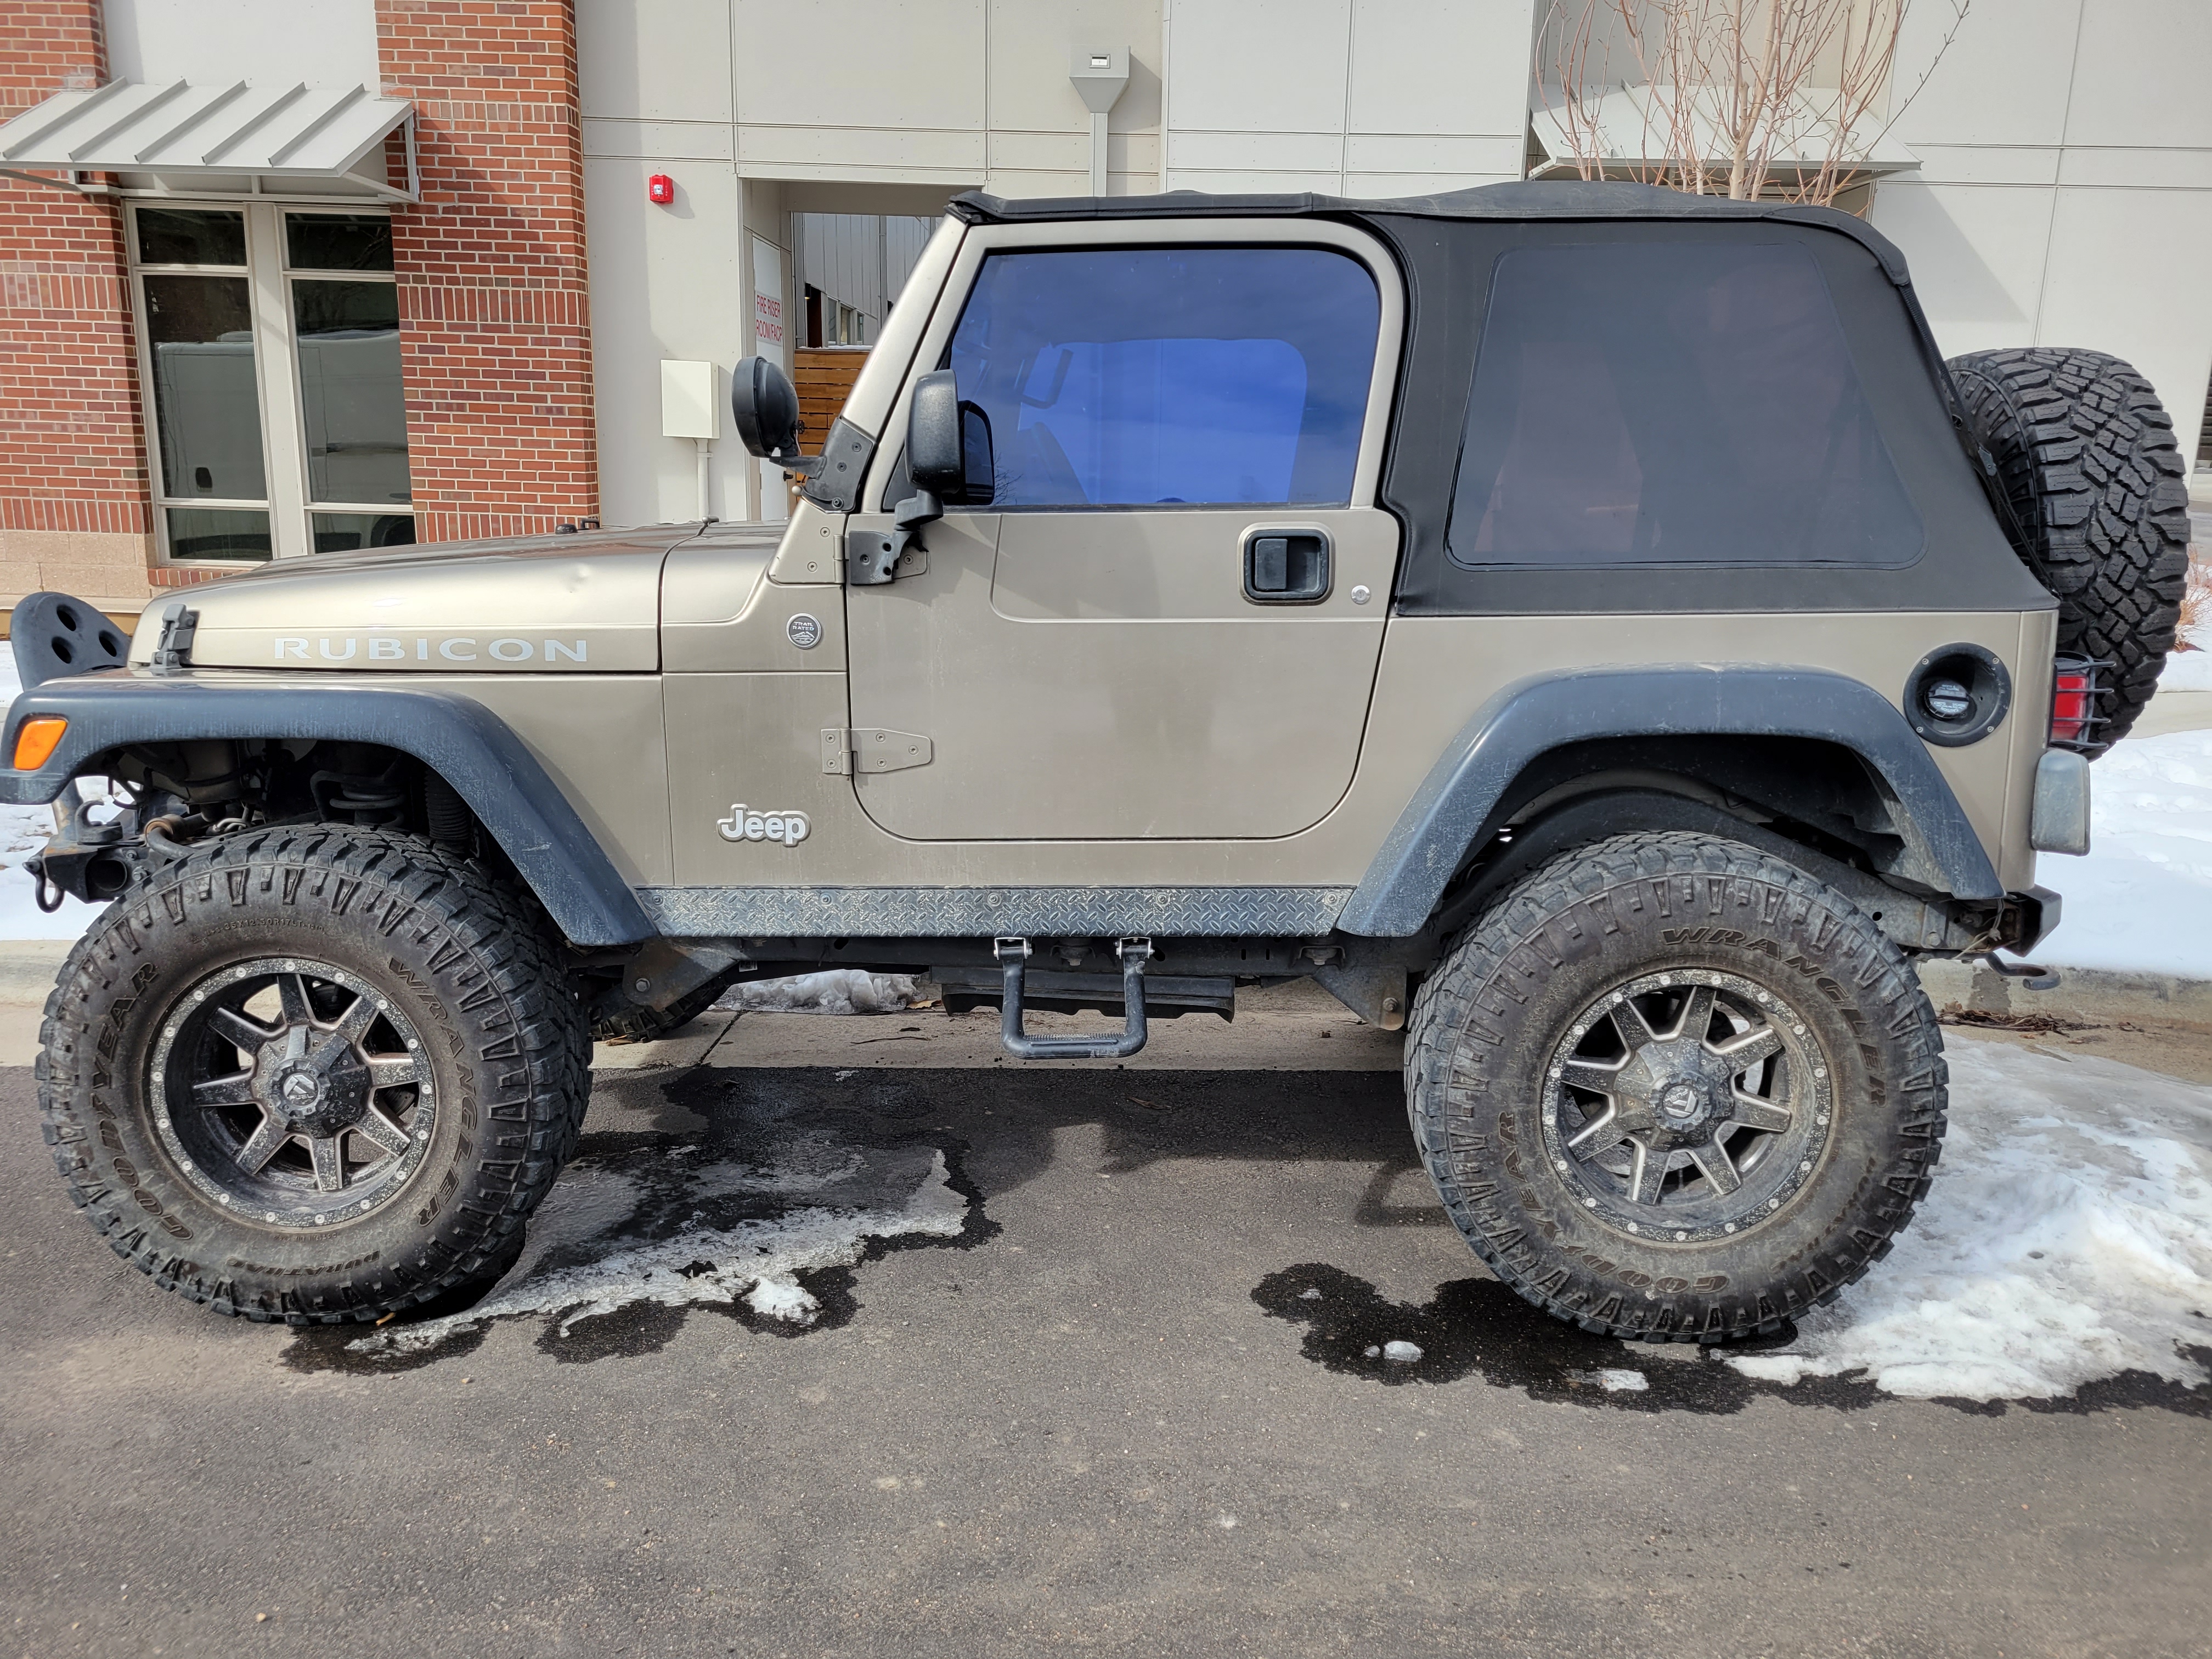 Used Jeep Wrangler for Sale in Altona, CO Under $20,000 